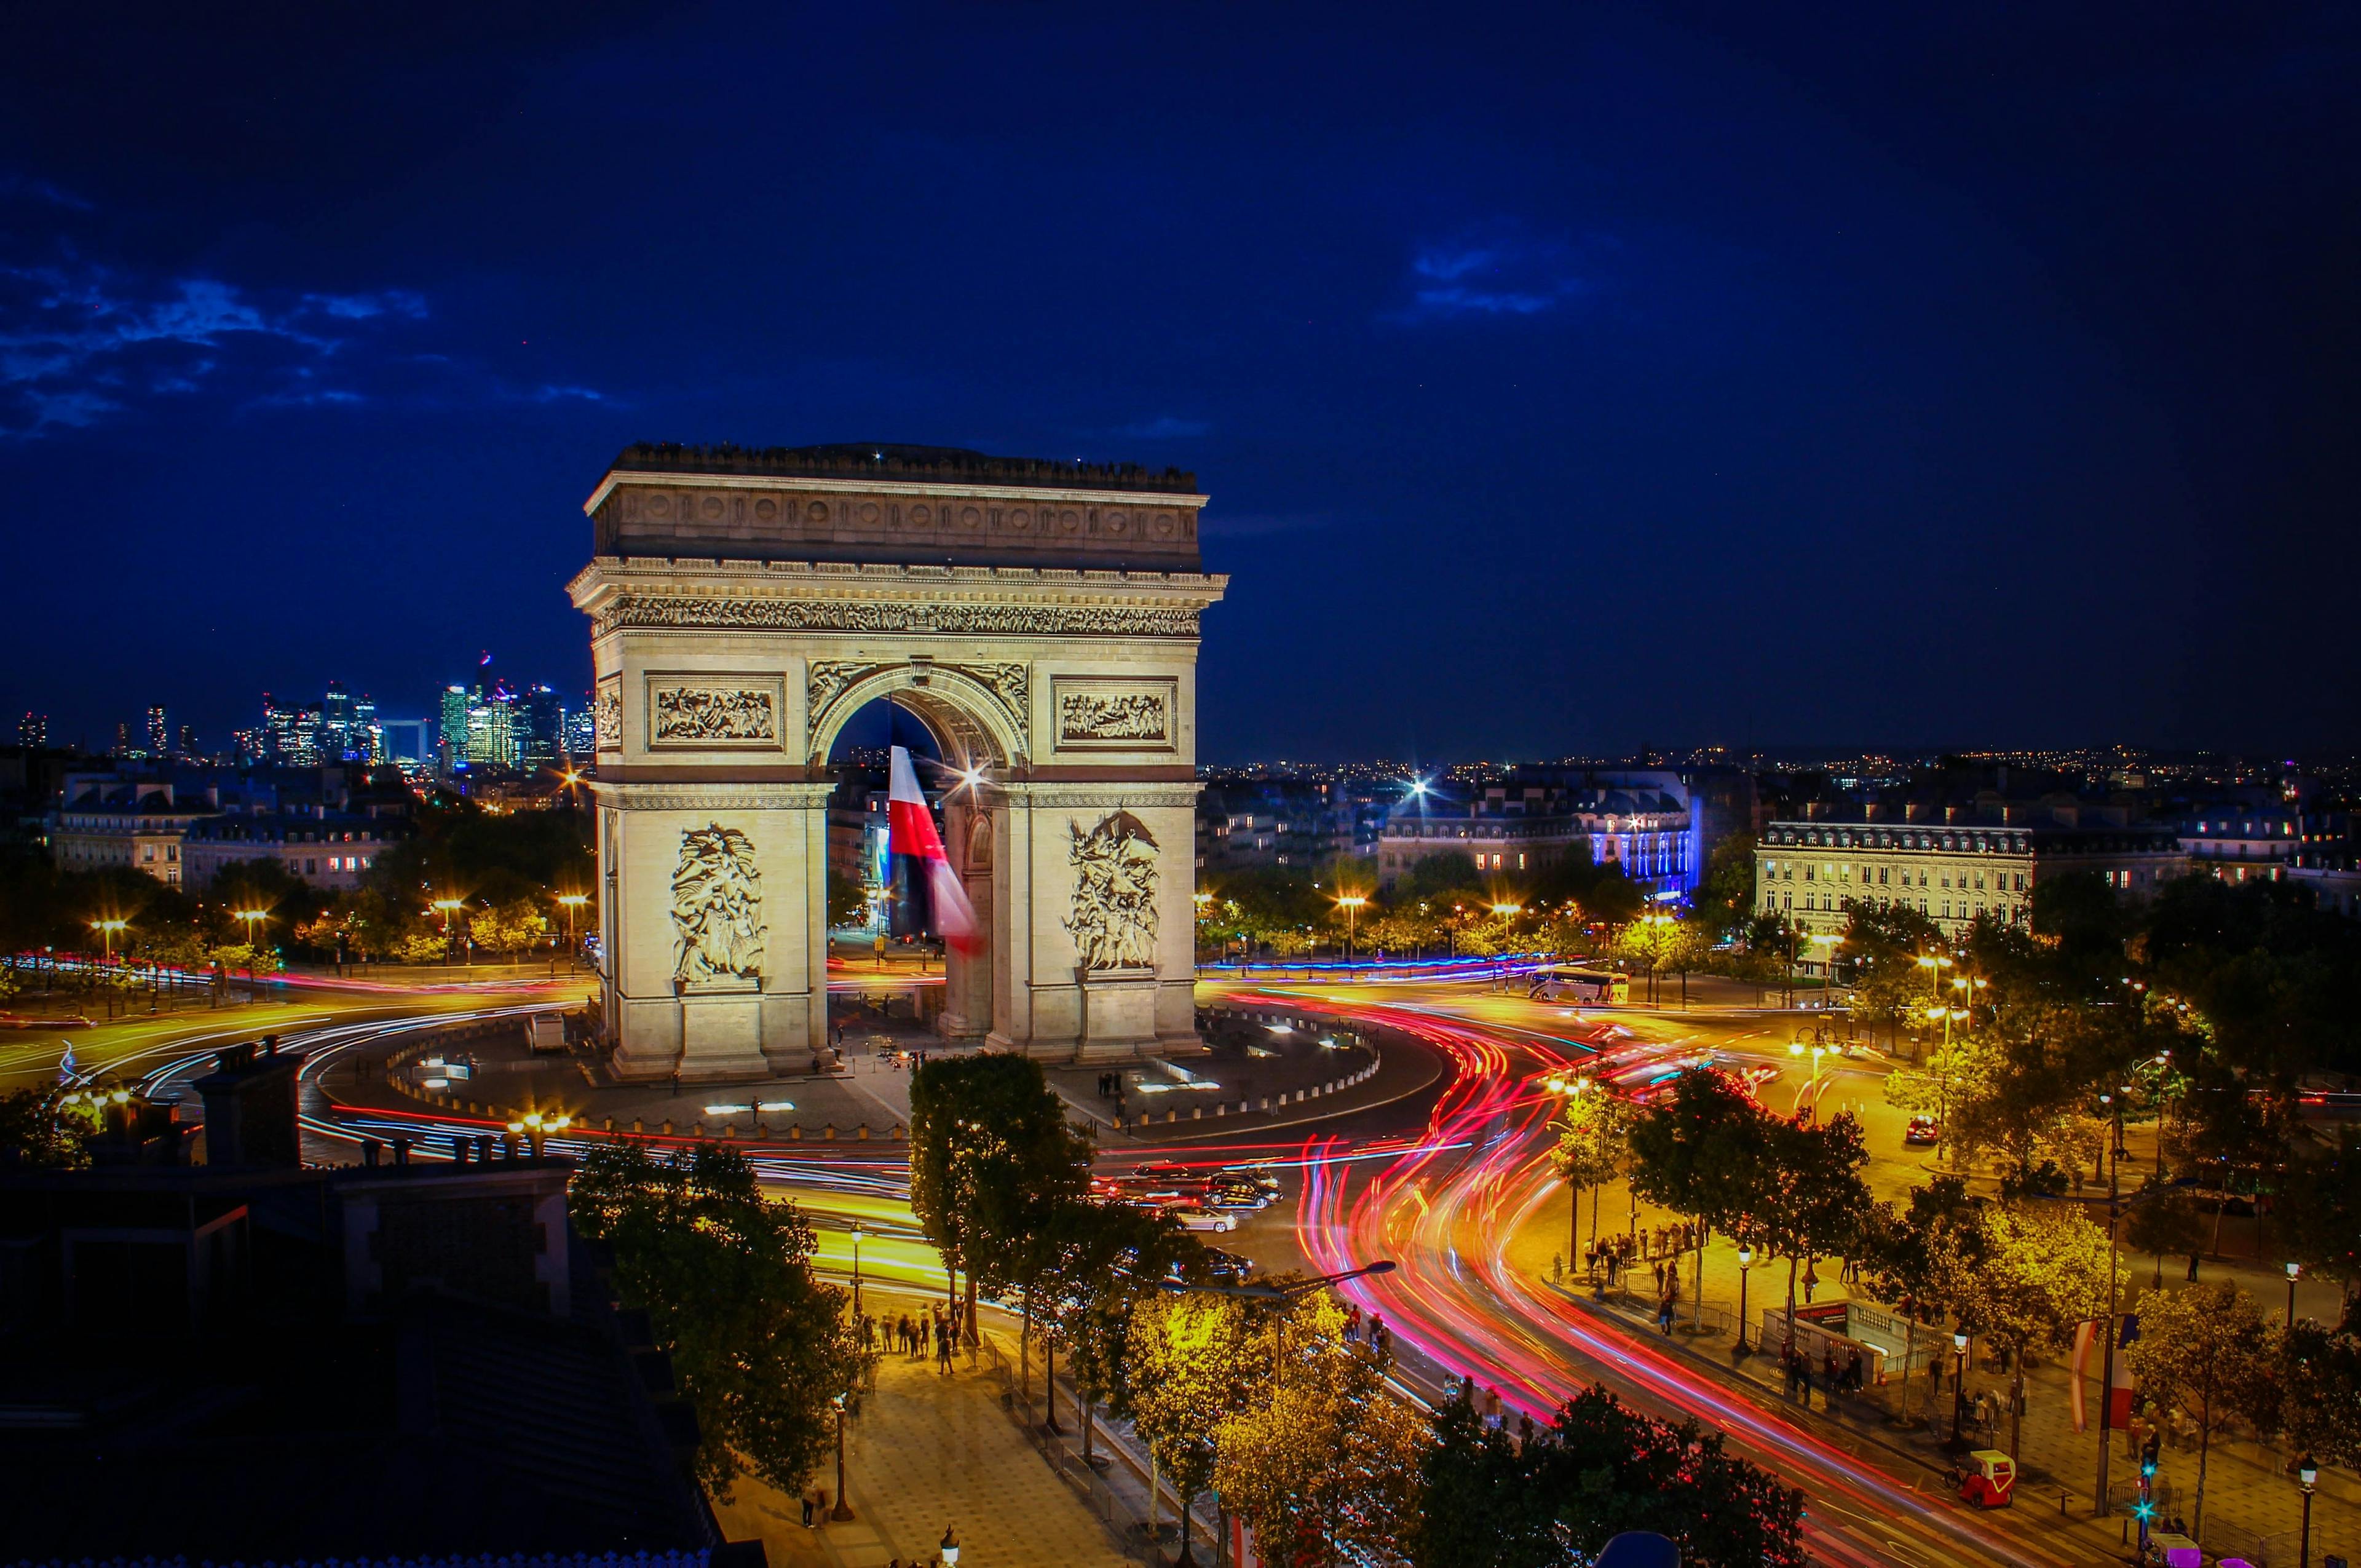 Arc de Triomphe in Paris during night